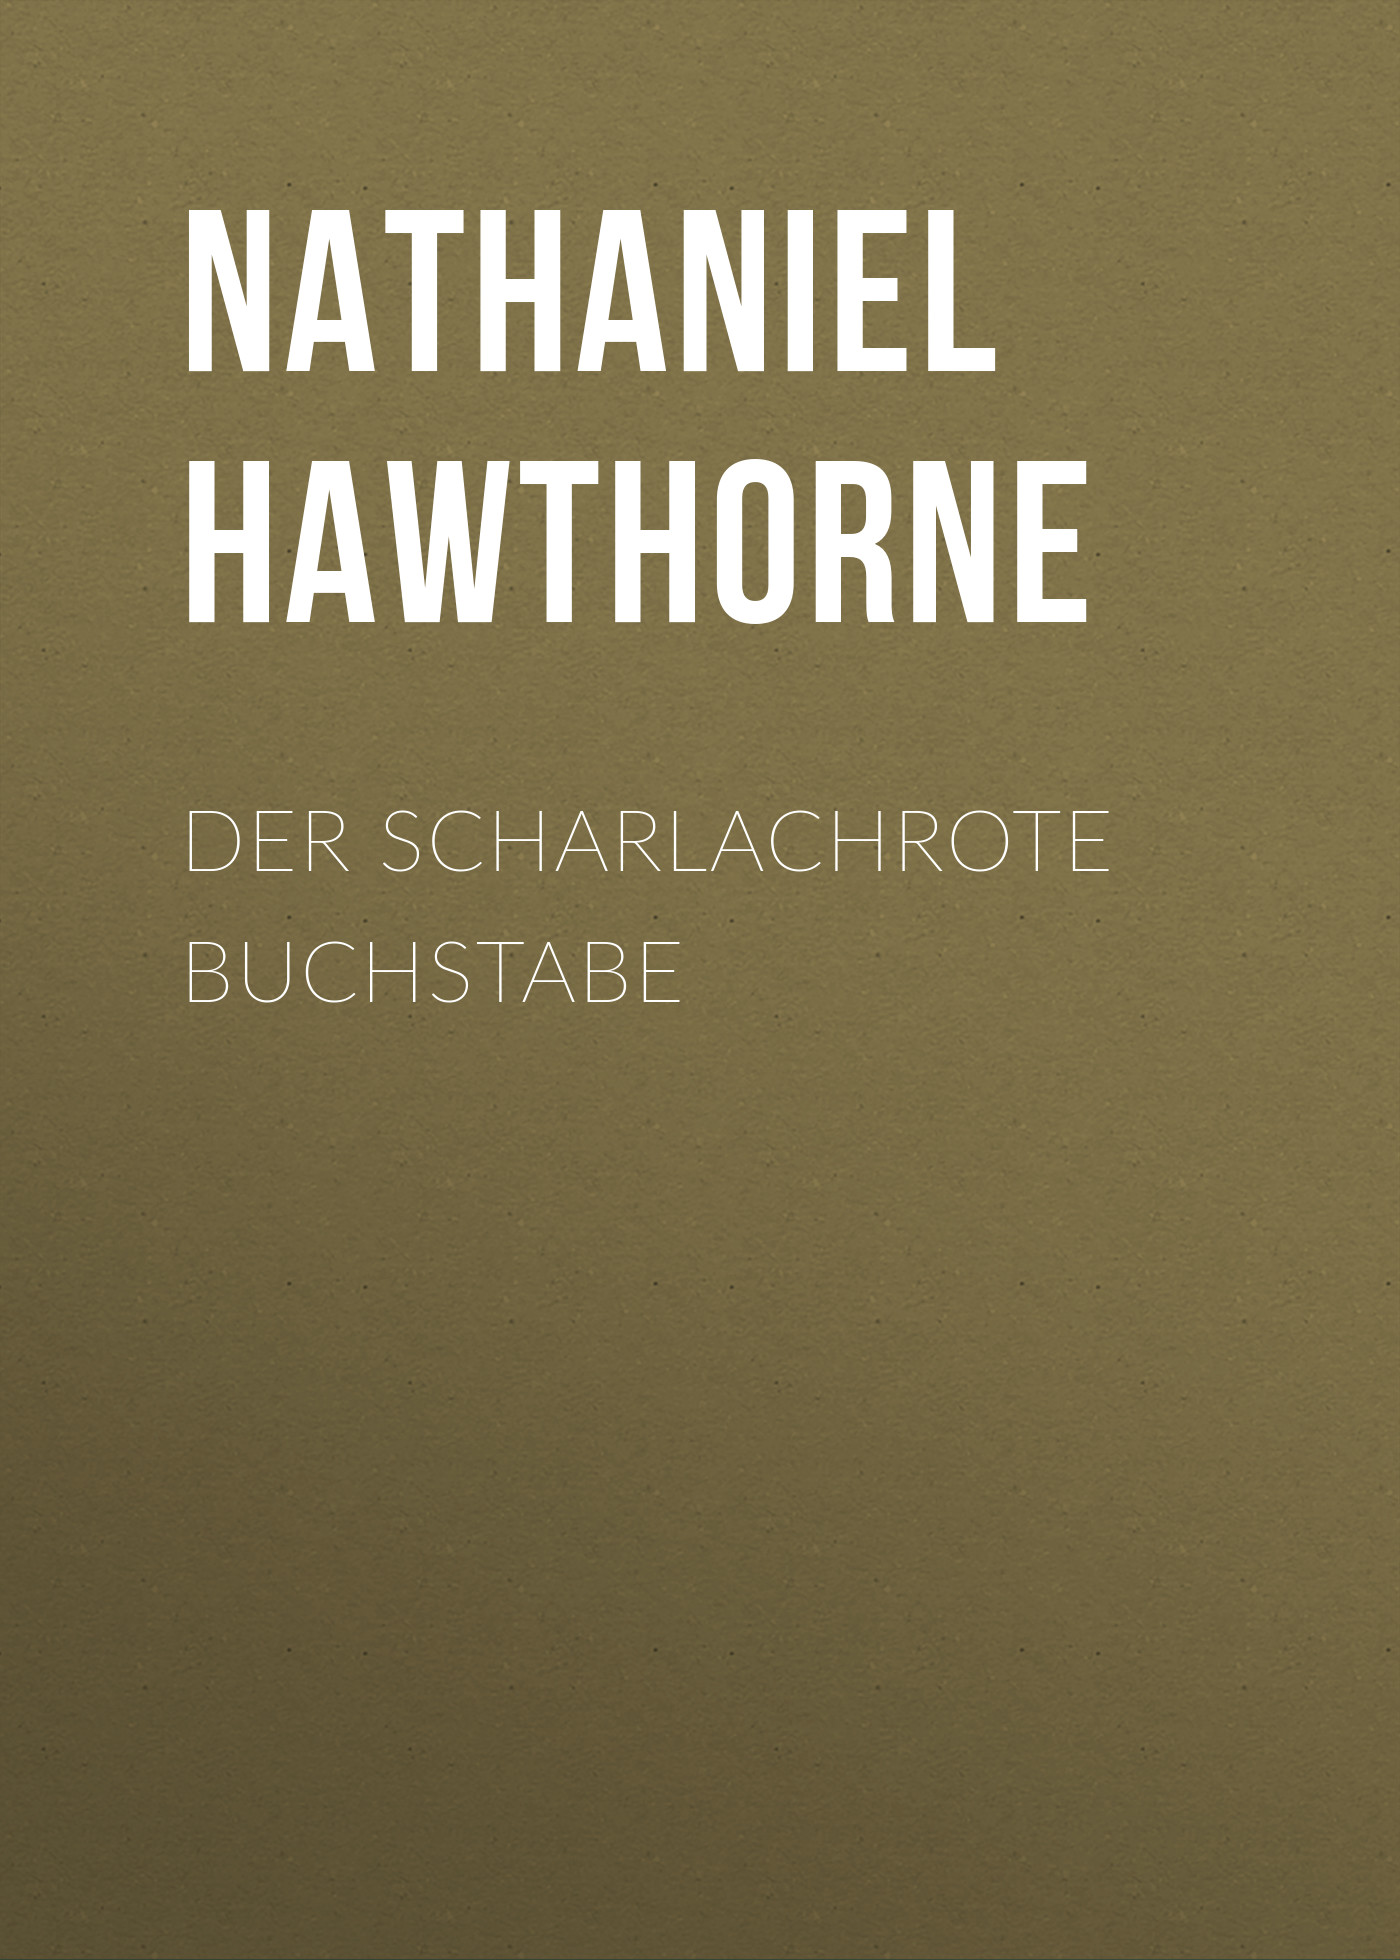 Книга Der scharlachrote Buchstabe из серии , созданная Nathaniel Hawthorne, может относится к жанру Зарубежная классика. Стоимость электронной книги Der scharlachrote Buchstabe с идентификатором 48634068 составляет 0 руб.